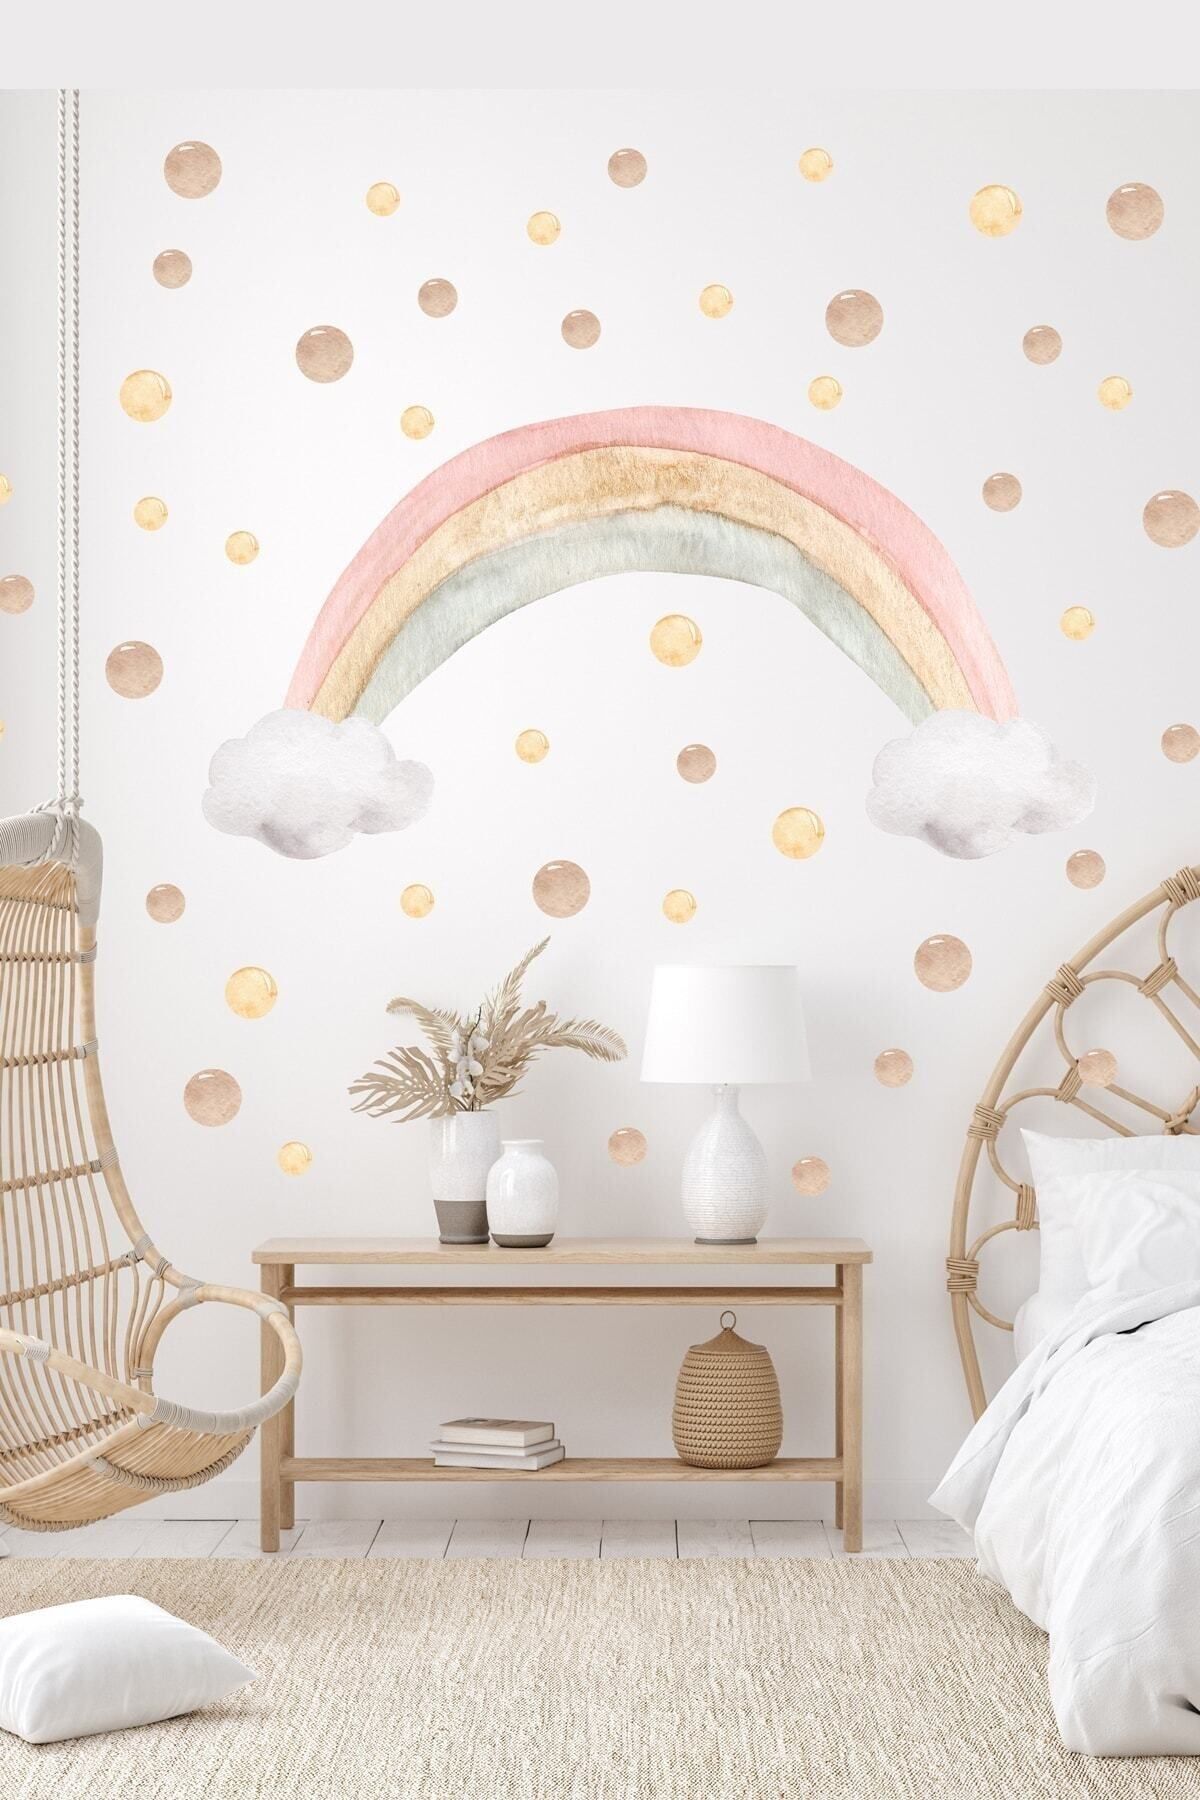 KanvasSepeti Soft Renk Gökkuşağı Ve Kahverengi Tonlarda Puantiyeler Çocuk Odası Duvar Sticker Seti